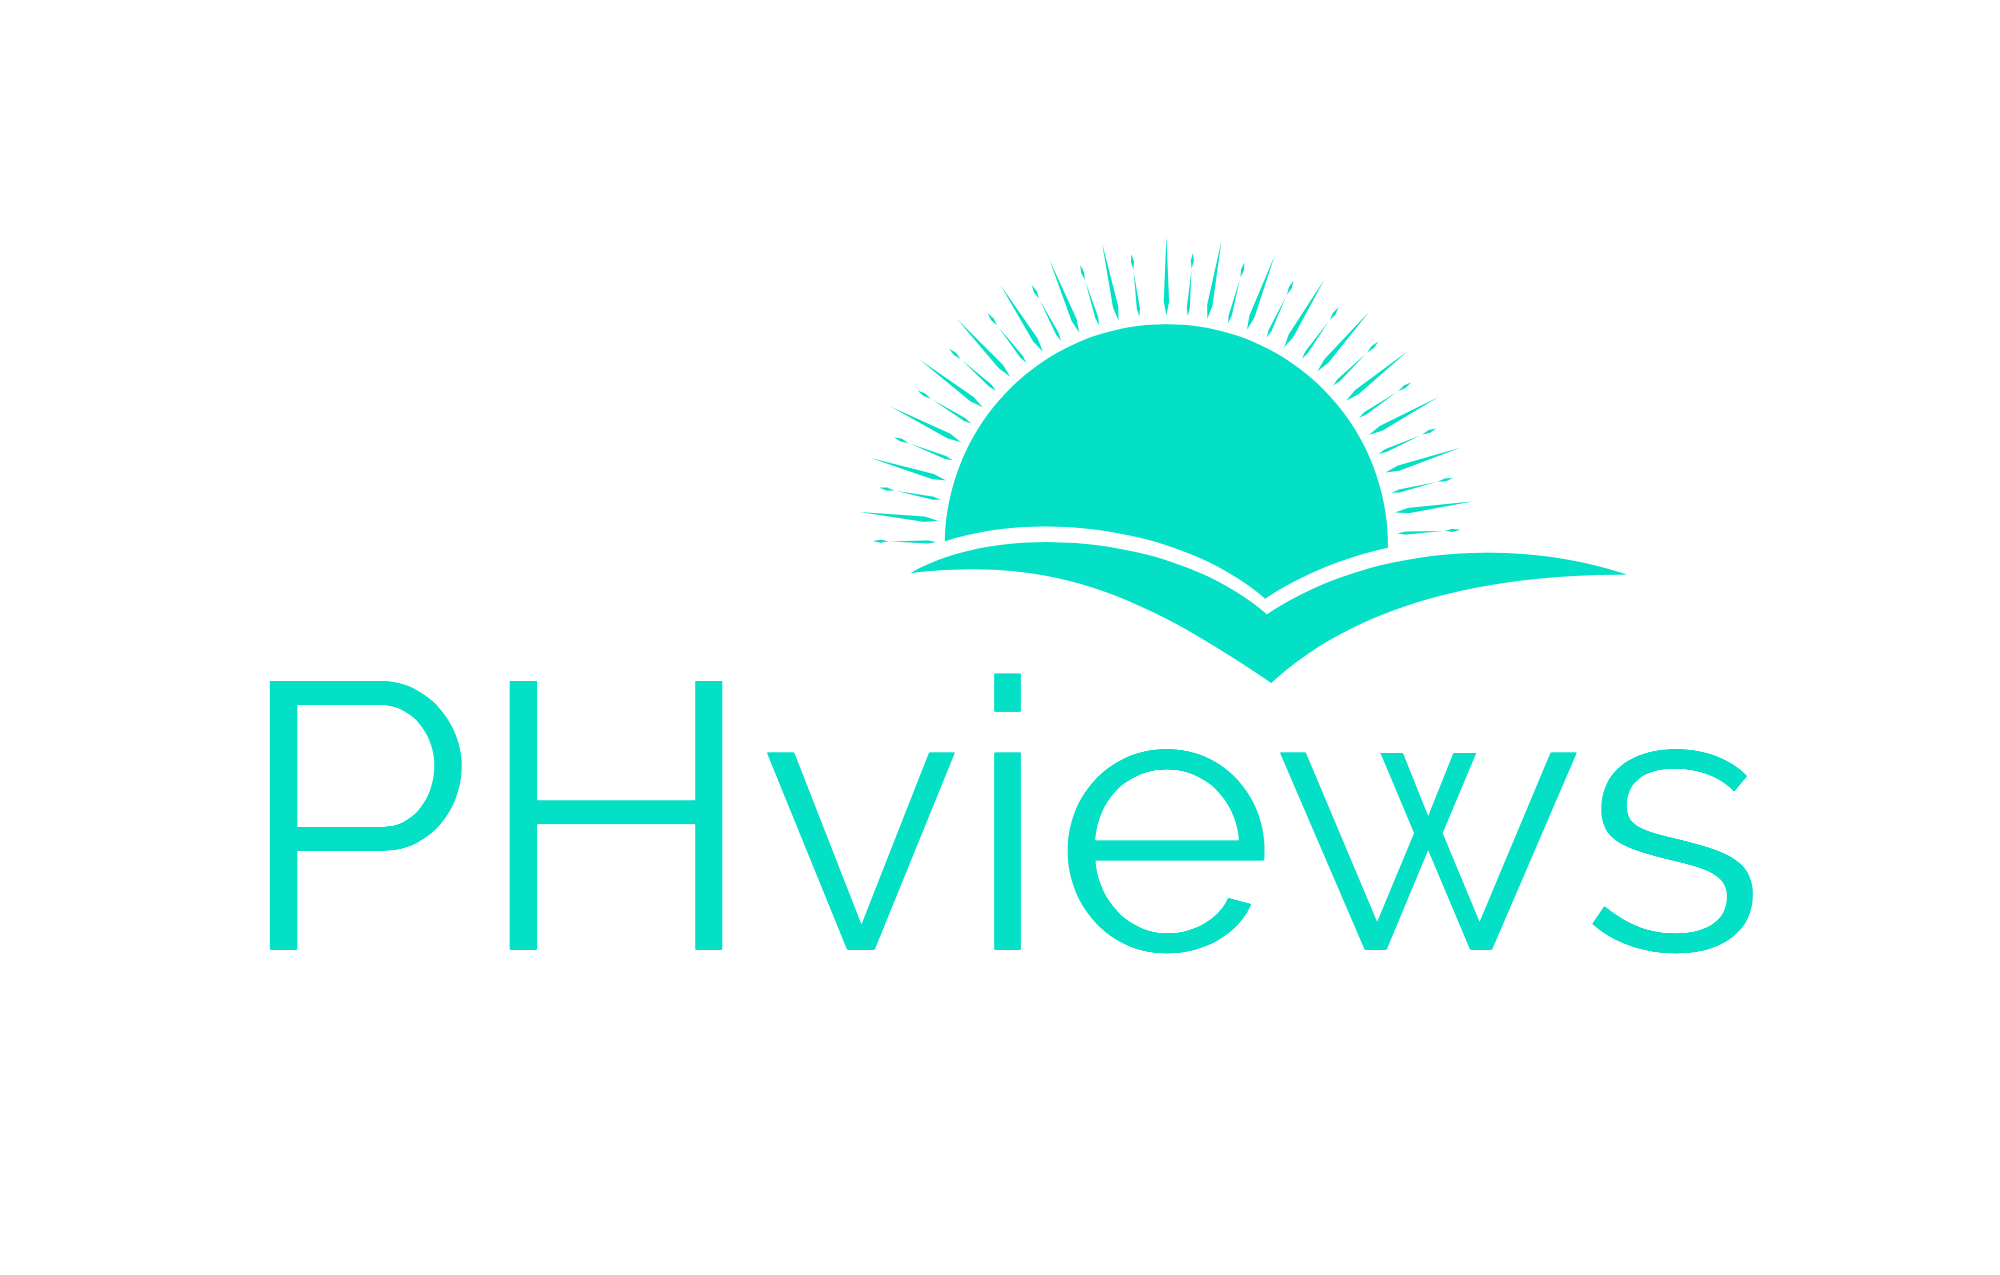 PHviews